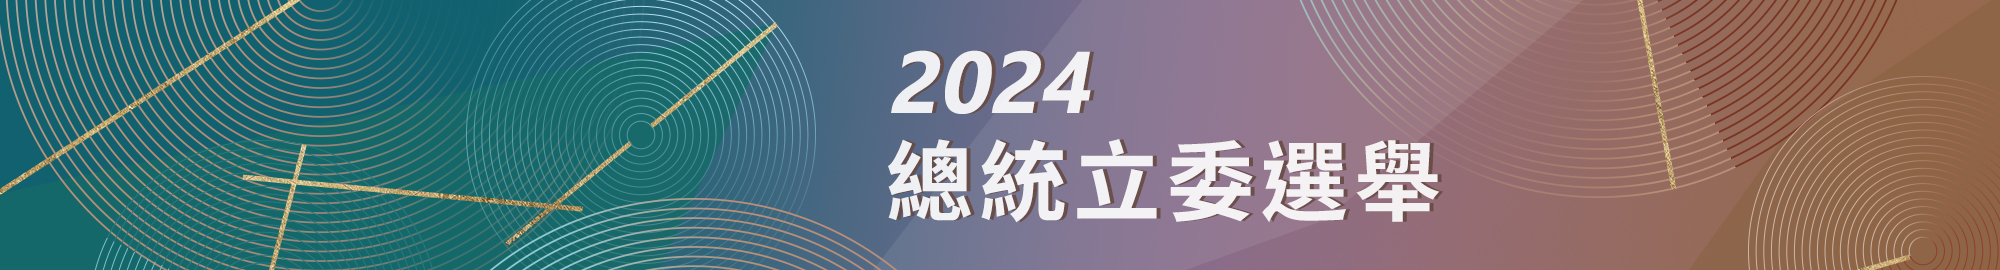 2024總統立委選舉